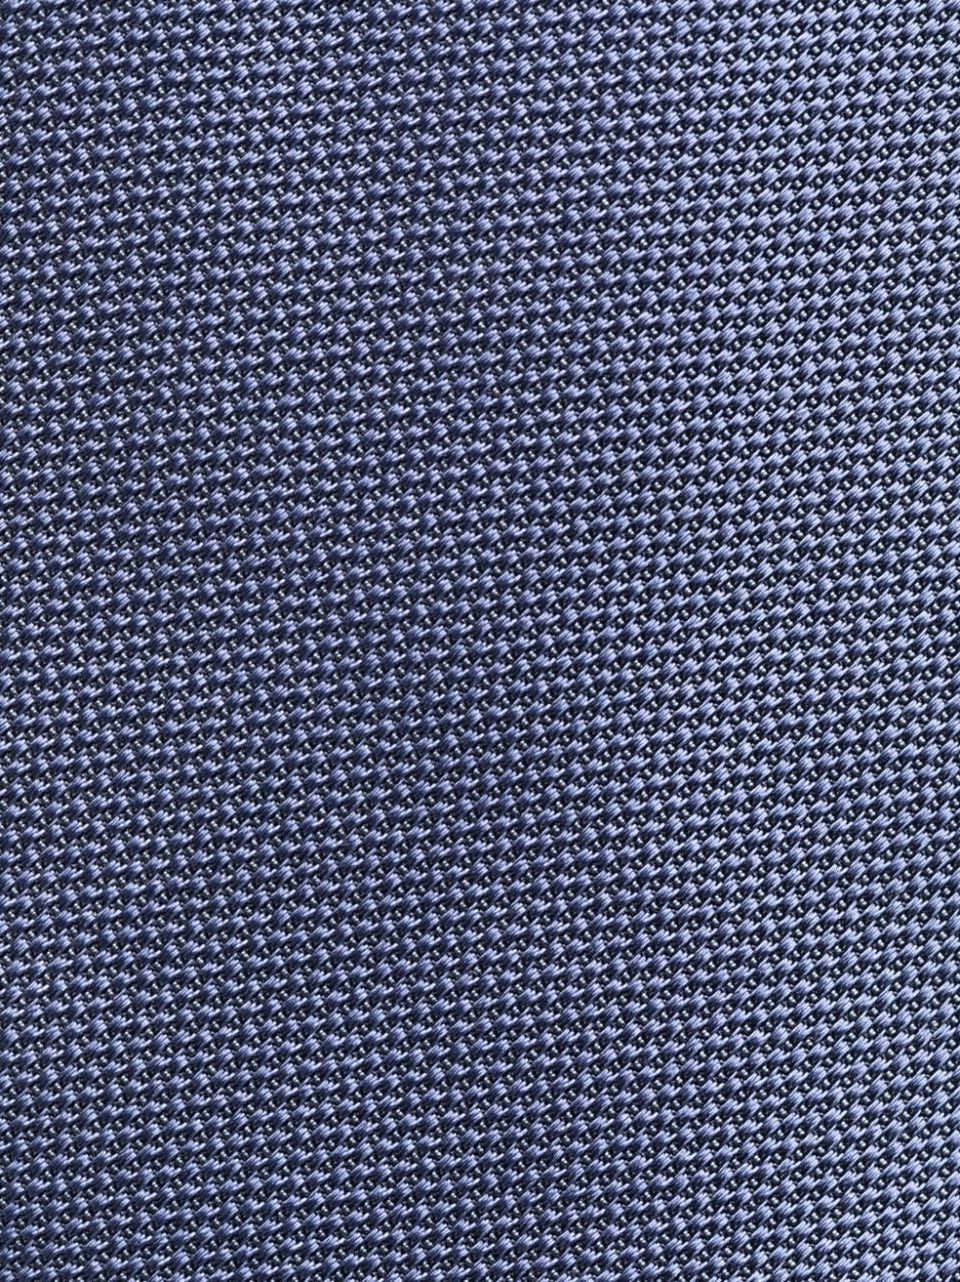 Silk woven pattern tie